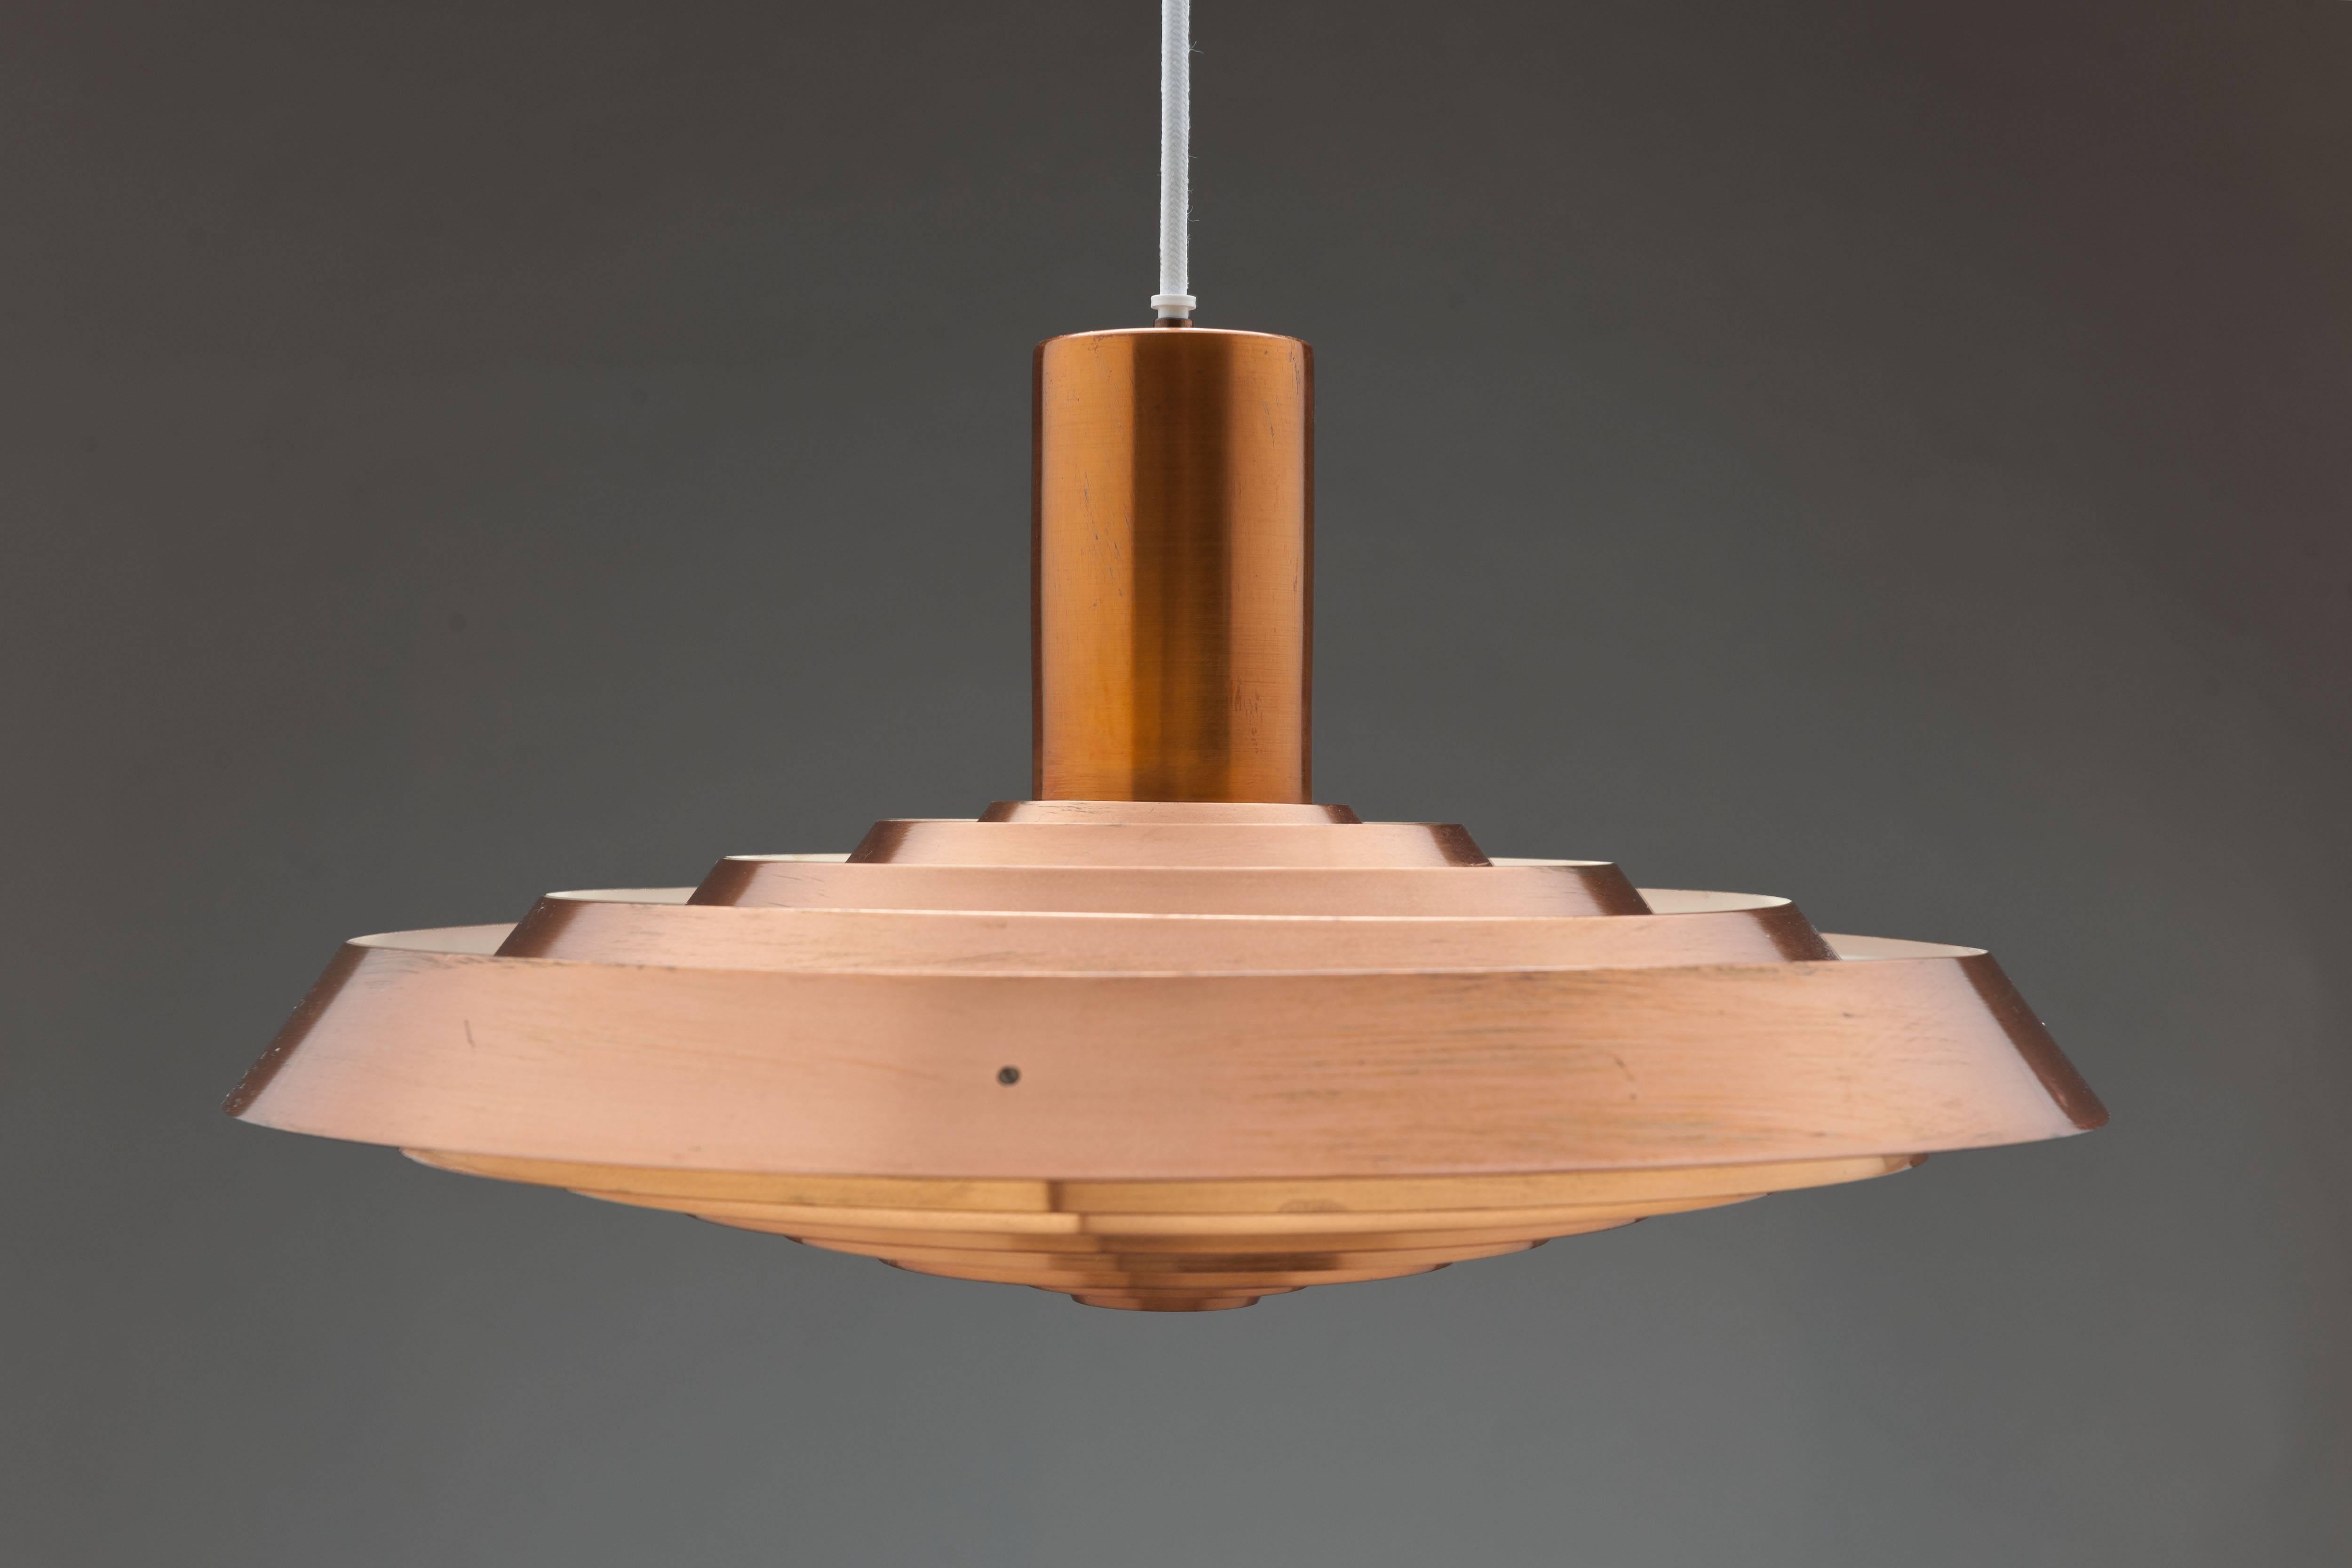 Scandinavian Modern Copper Poul Henningsen, Louis Poulsen Langelinie Plate Lamp, 1958